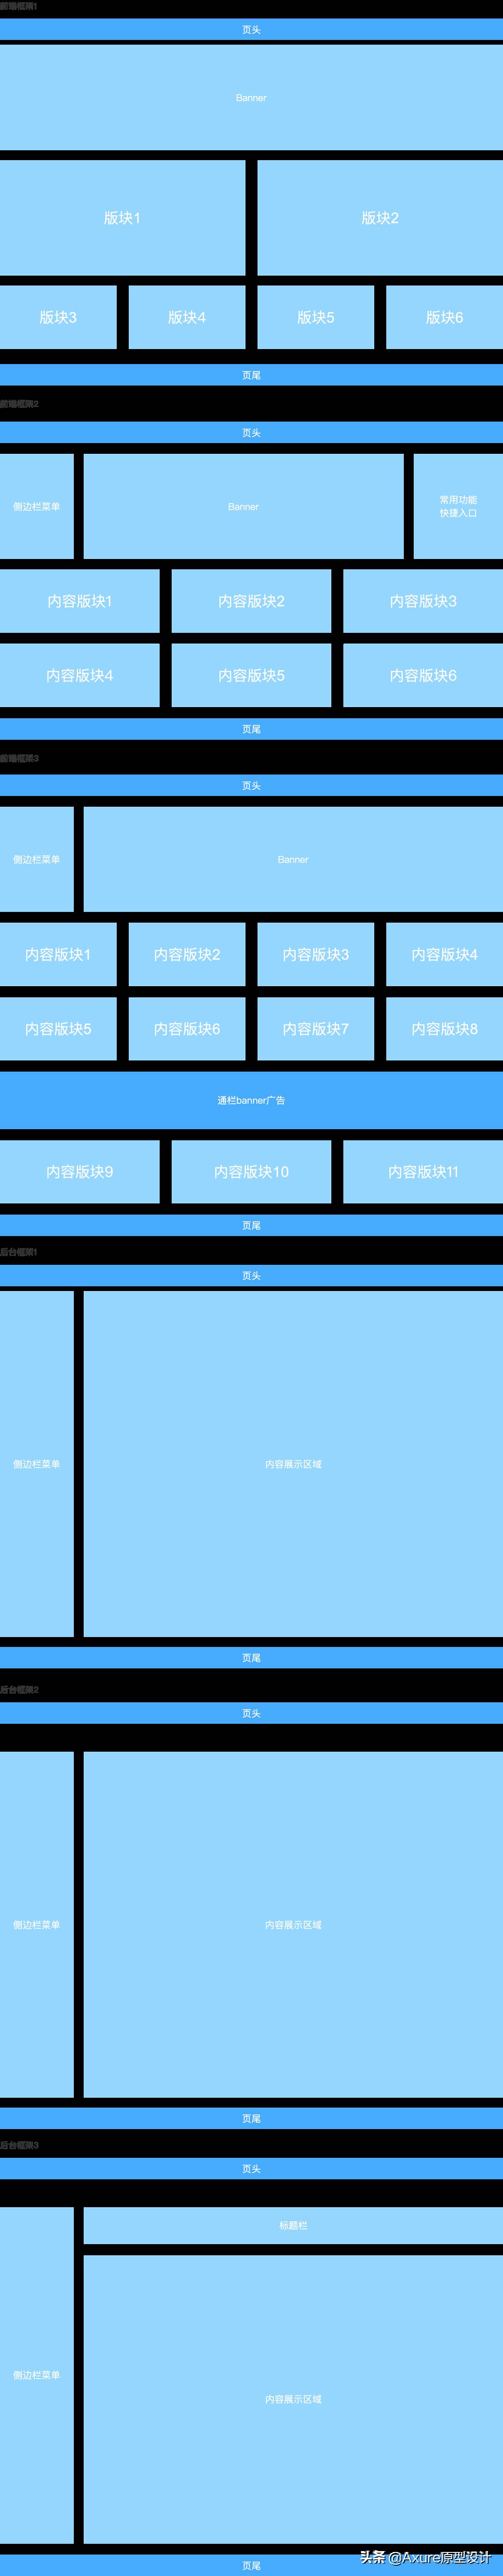 web原型设计思路-axure网页制作教程-第3张图片